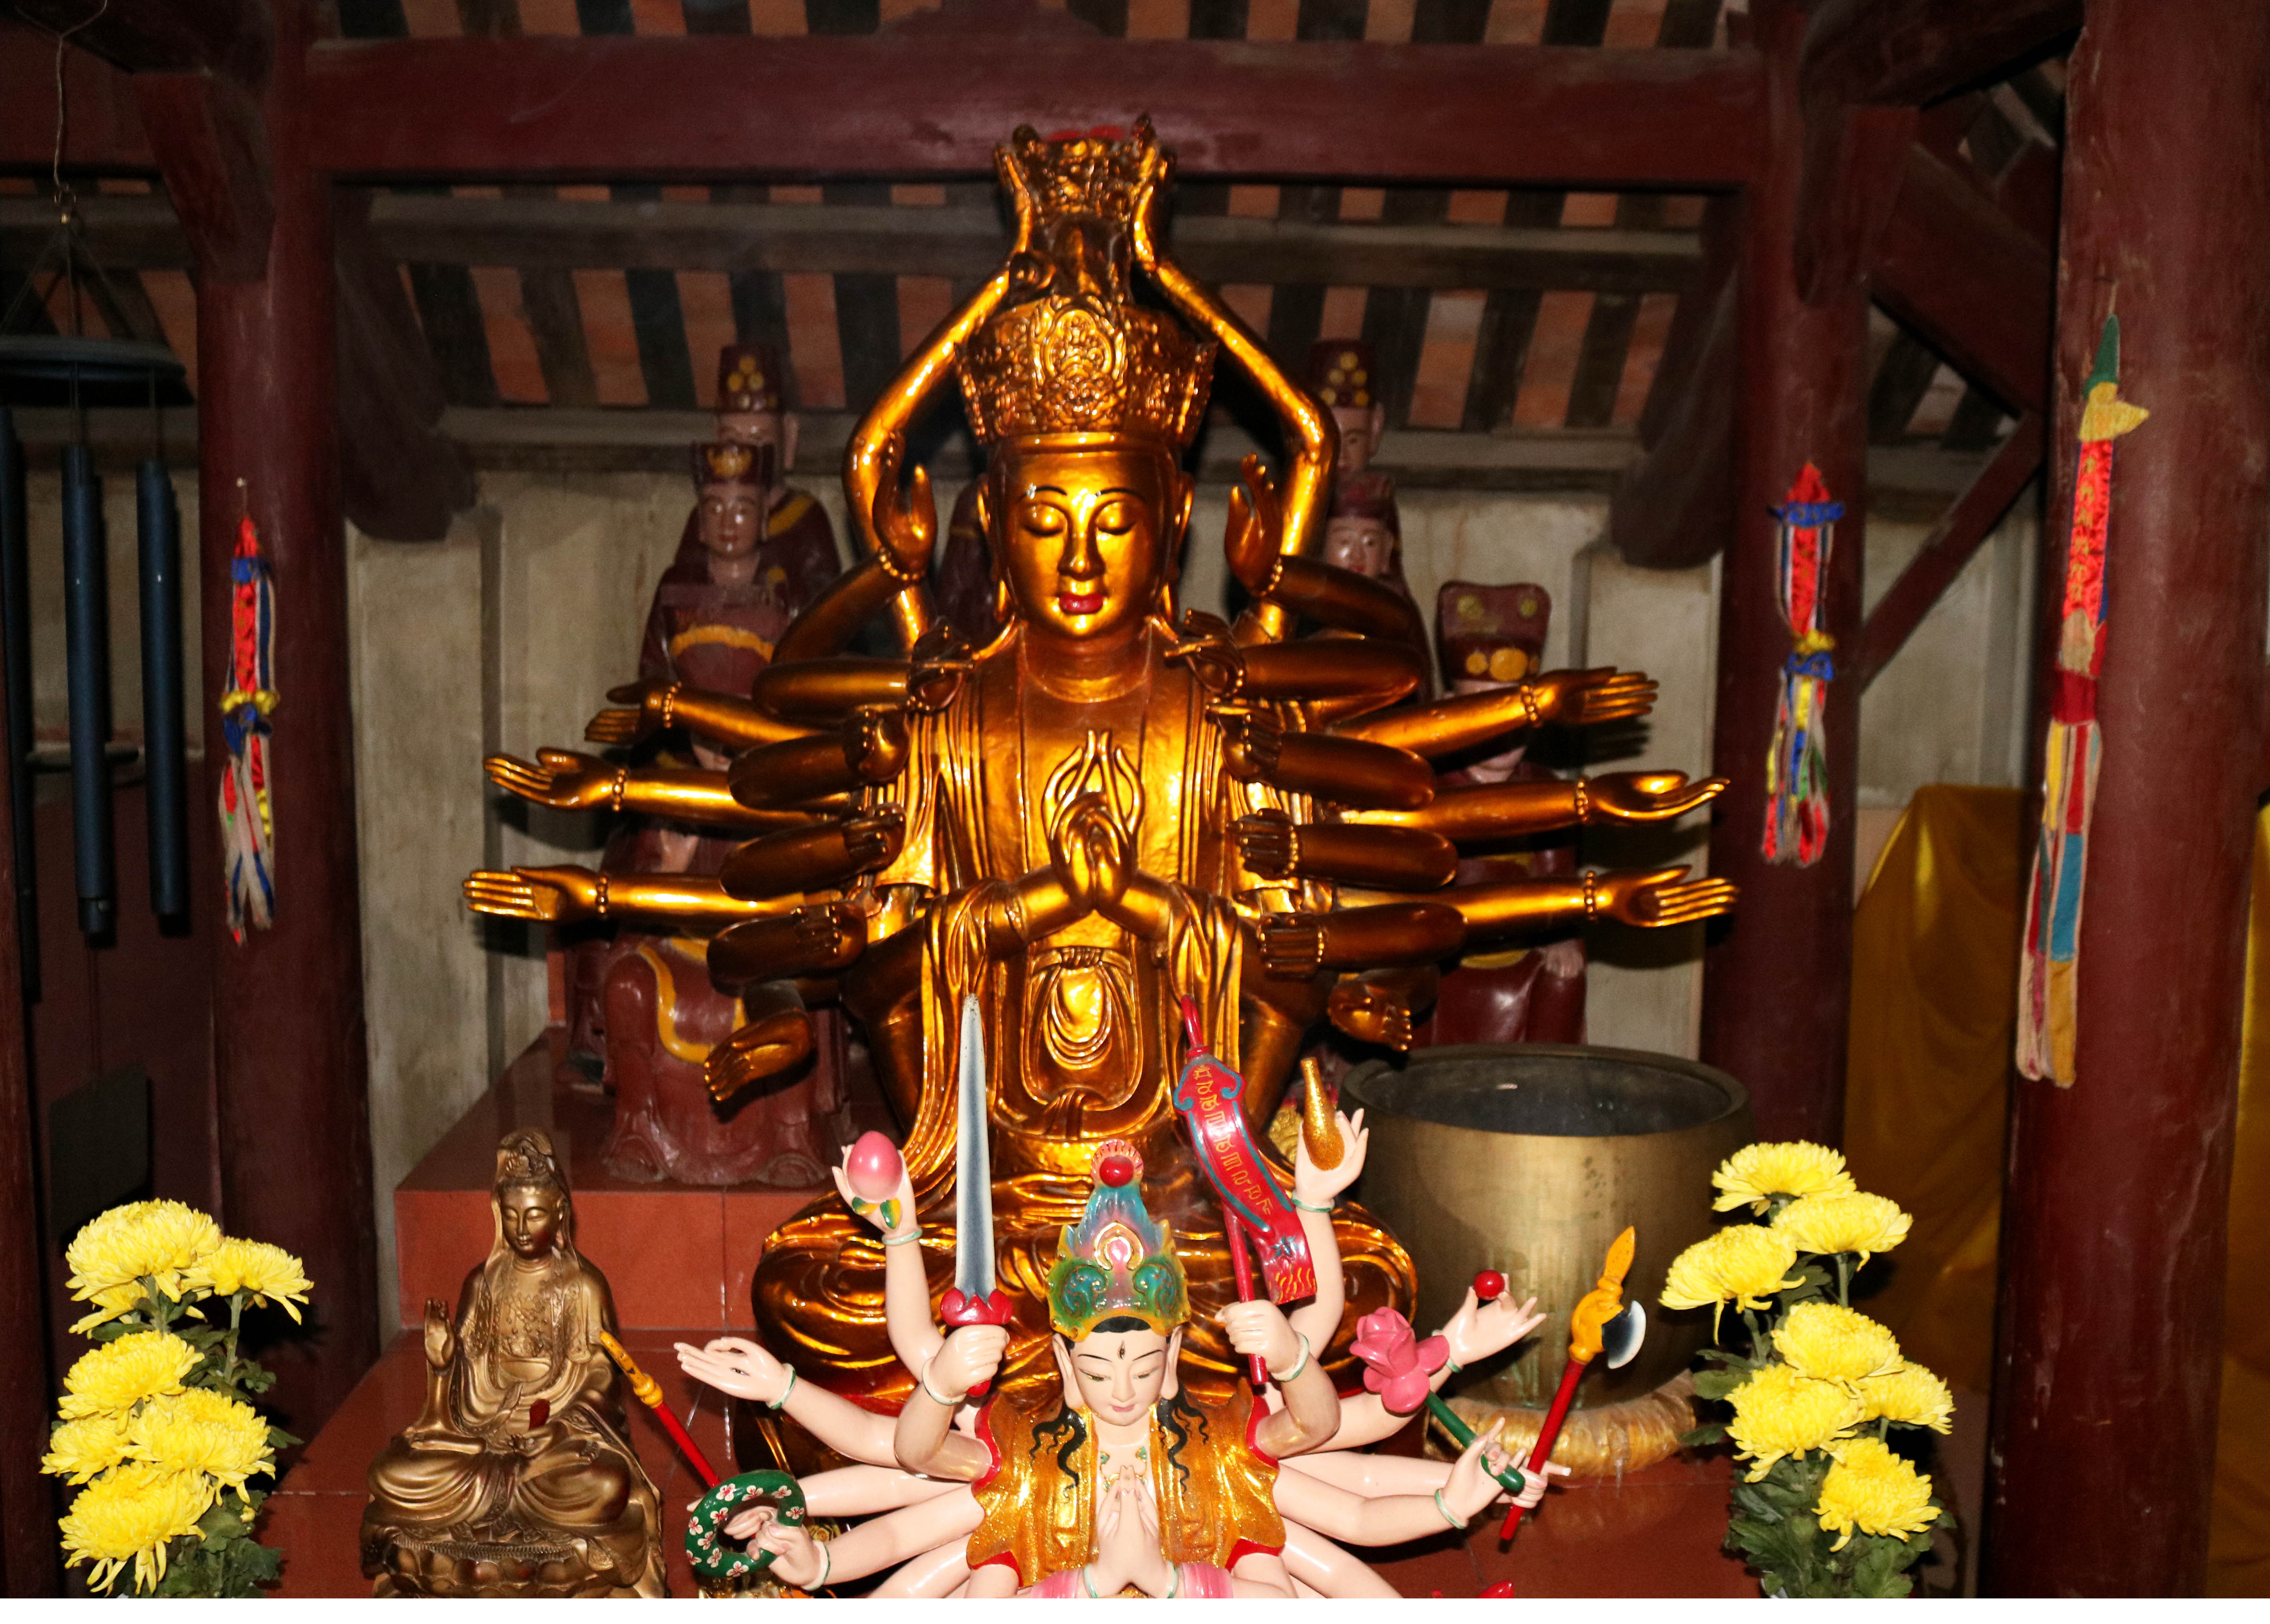 Đặc biệt ở gian bên trái của chùa thờ tượng Phật Mẫu Chuẩn Đề ngồi thiền định trên tòa sen với 24 cánh tay. Trong quan niệm của Phật giáo, Phật Mẫu Chuẩn Đề được xem là một trong lục quan âm của Phật giáo, là “mẹ của các Phật”, ngang hàng với Quán thế âm.